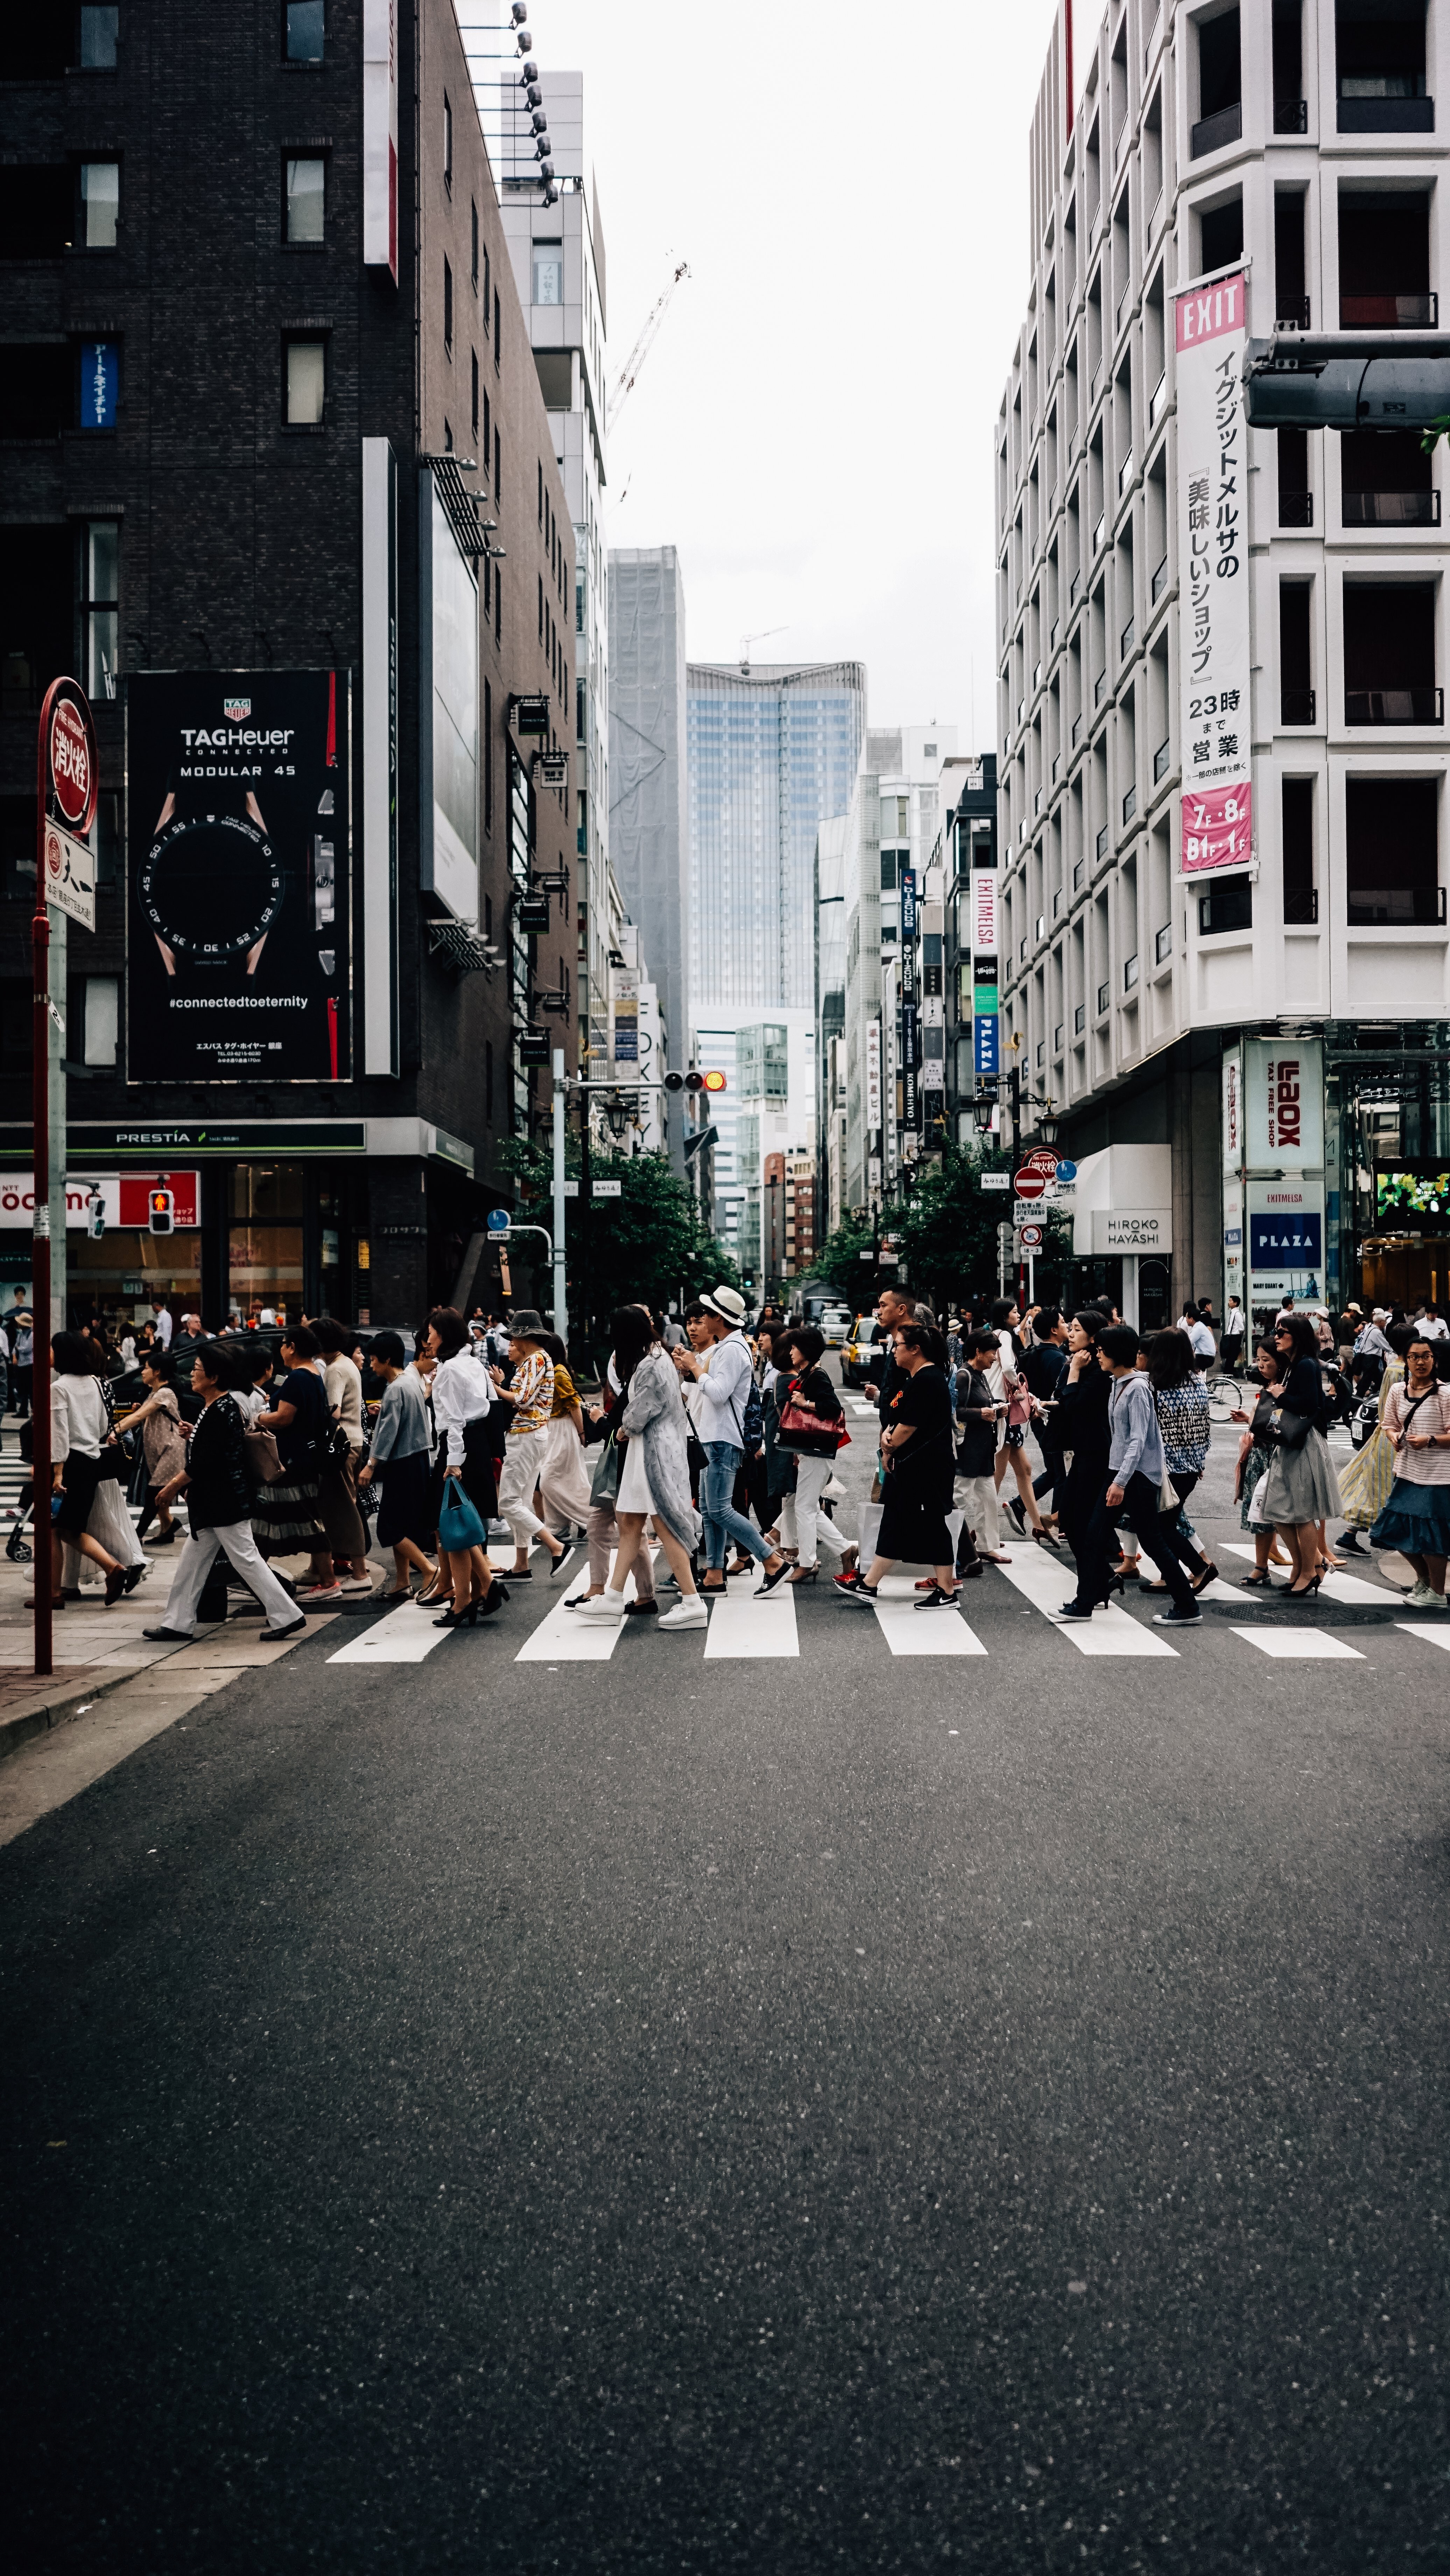 Cruce ocupado en la foto de la calle lateral japonesa